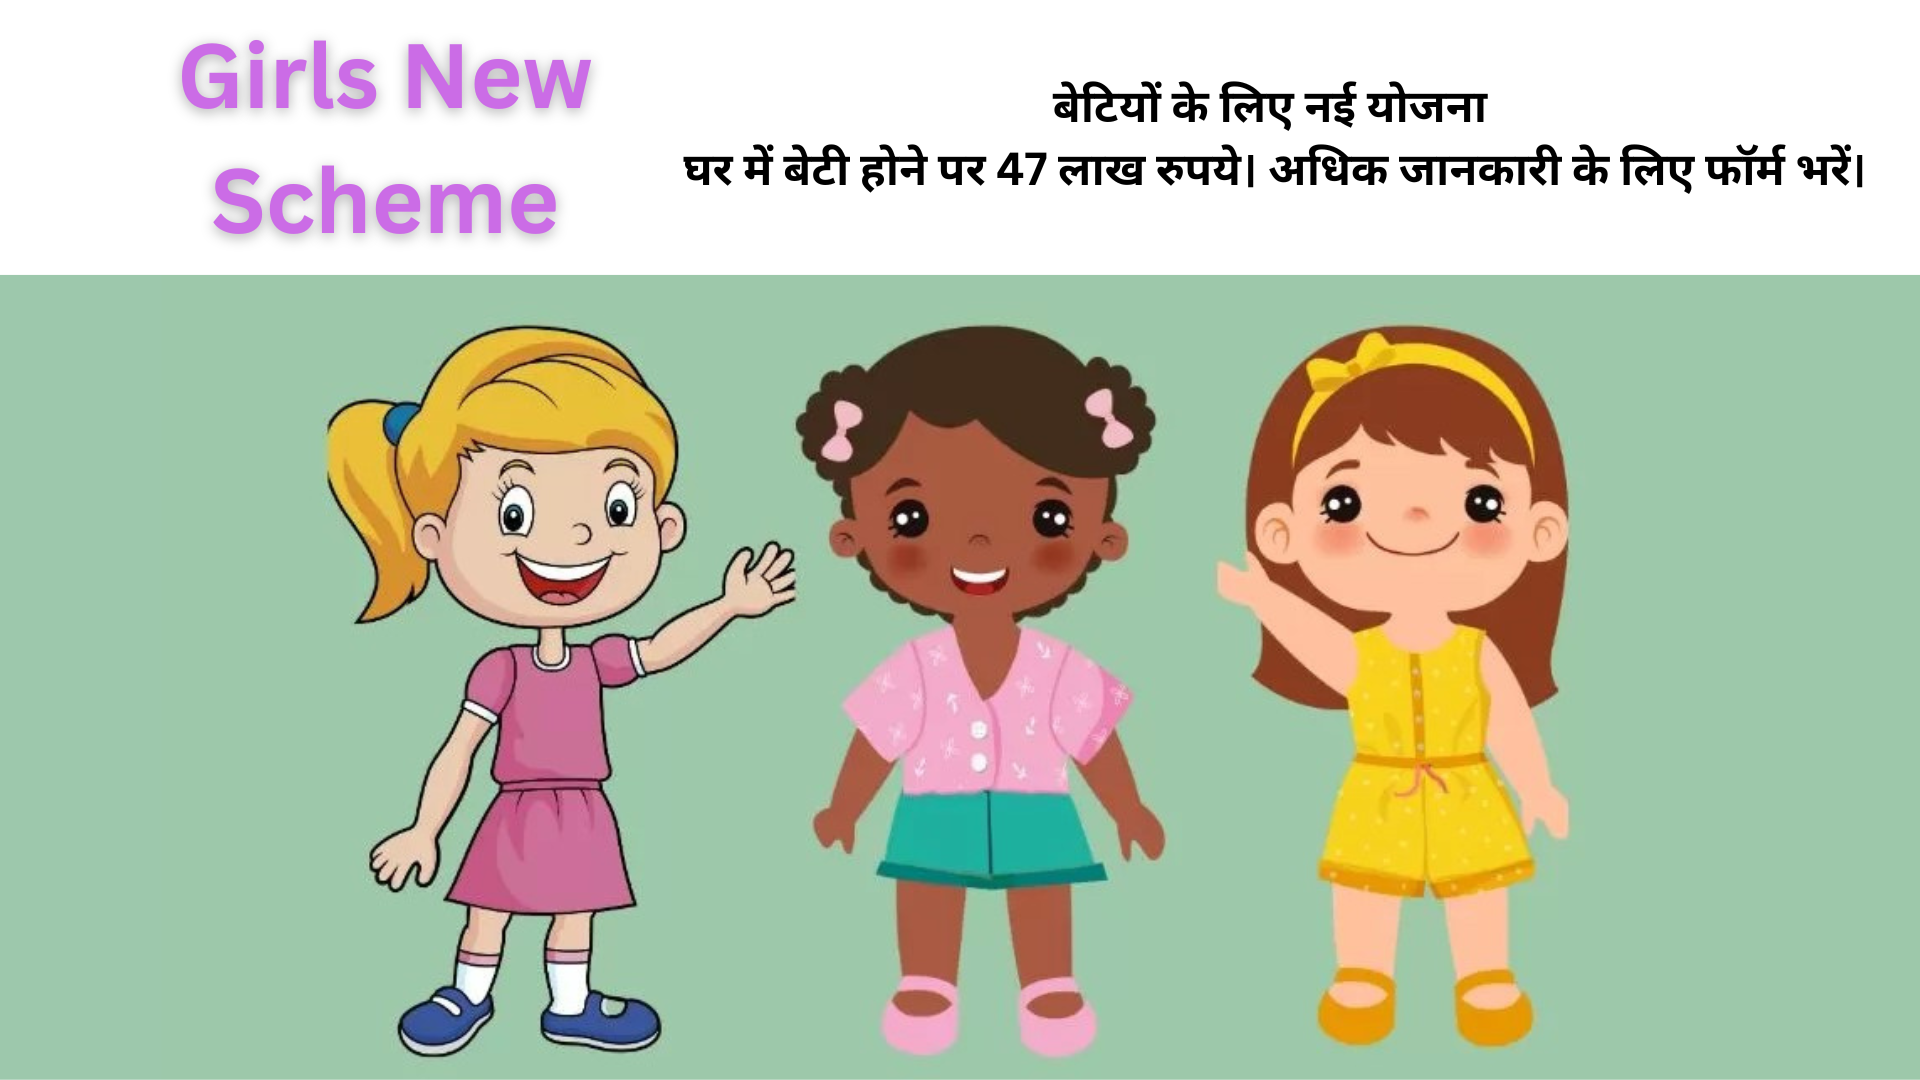 Girls New Scheme: घर में बेटी होने पर 47 लाख रुपये। फॉर्म भरें और अधिक जानकारी पाएं।